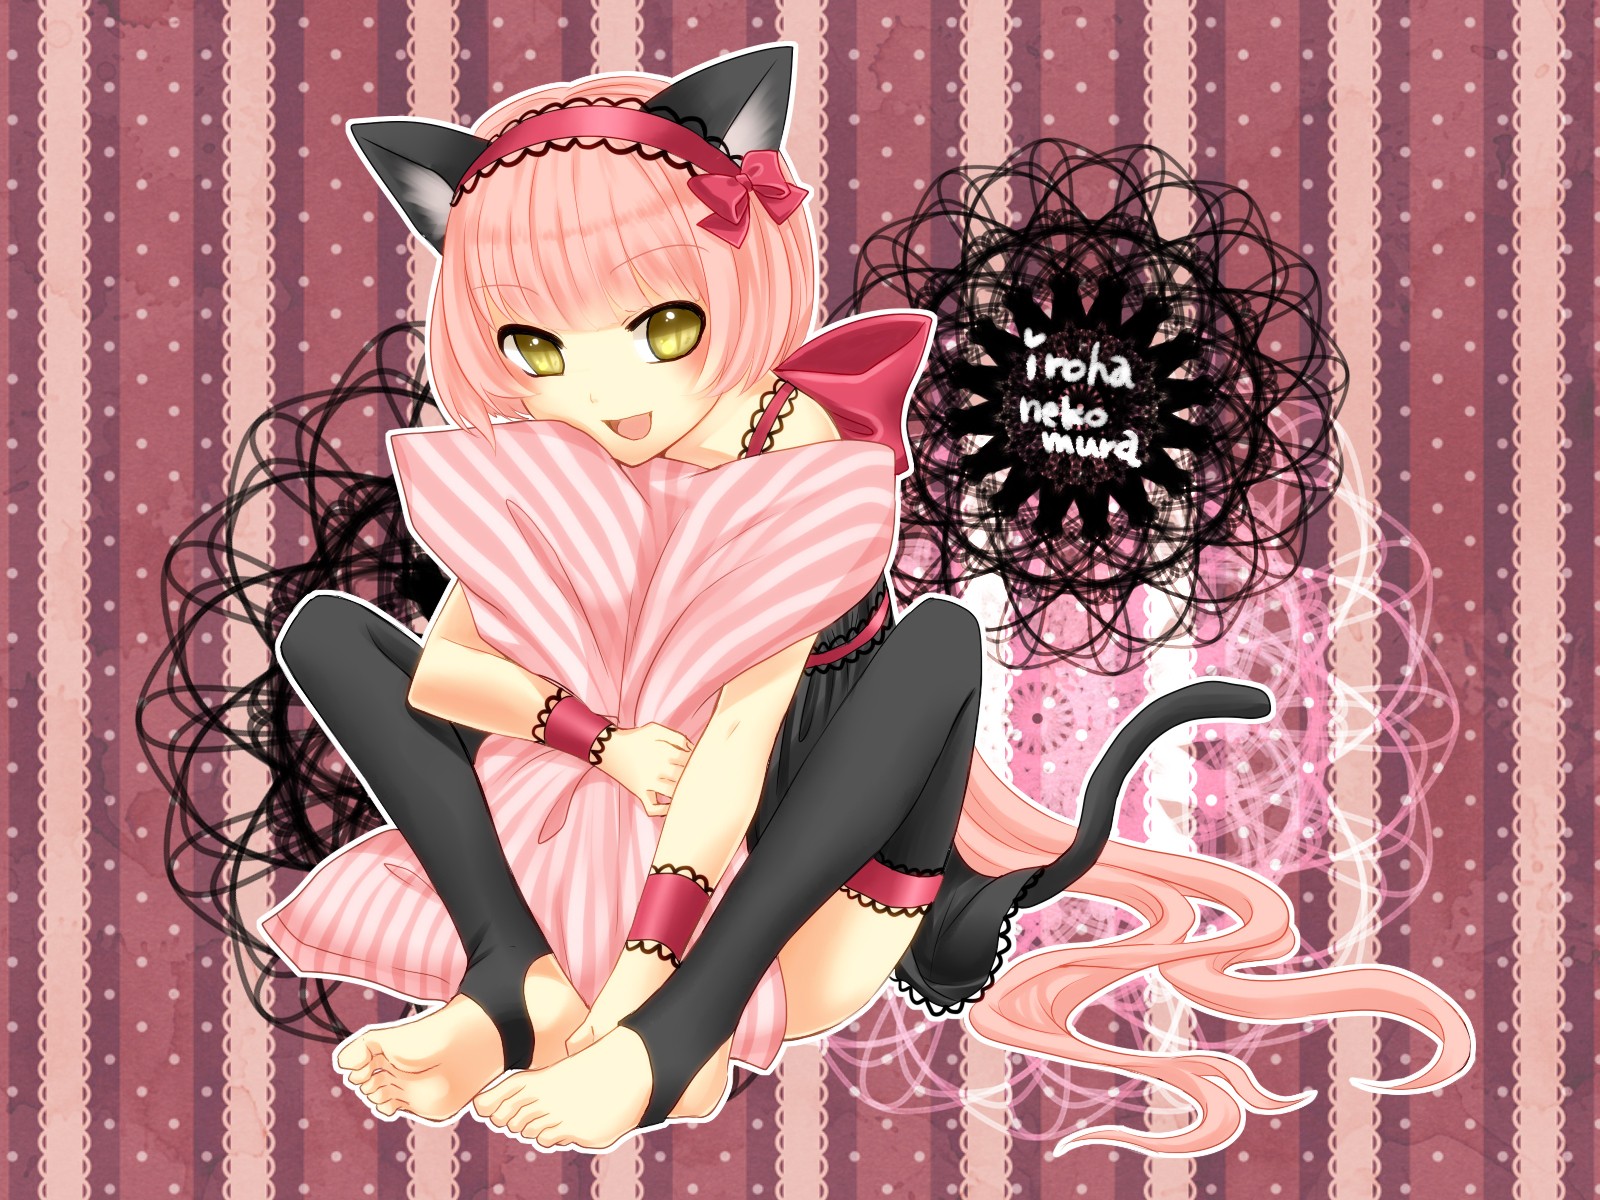 Черно розовую кошку